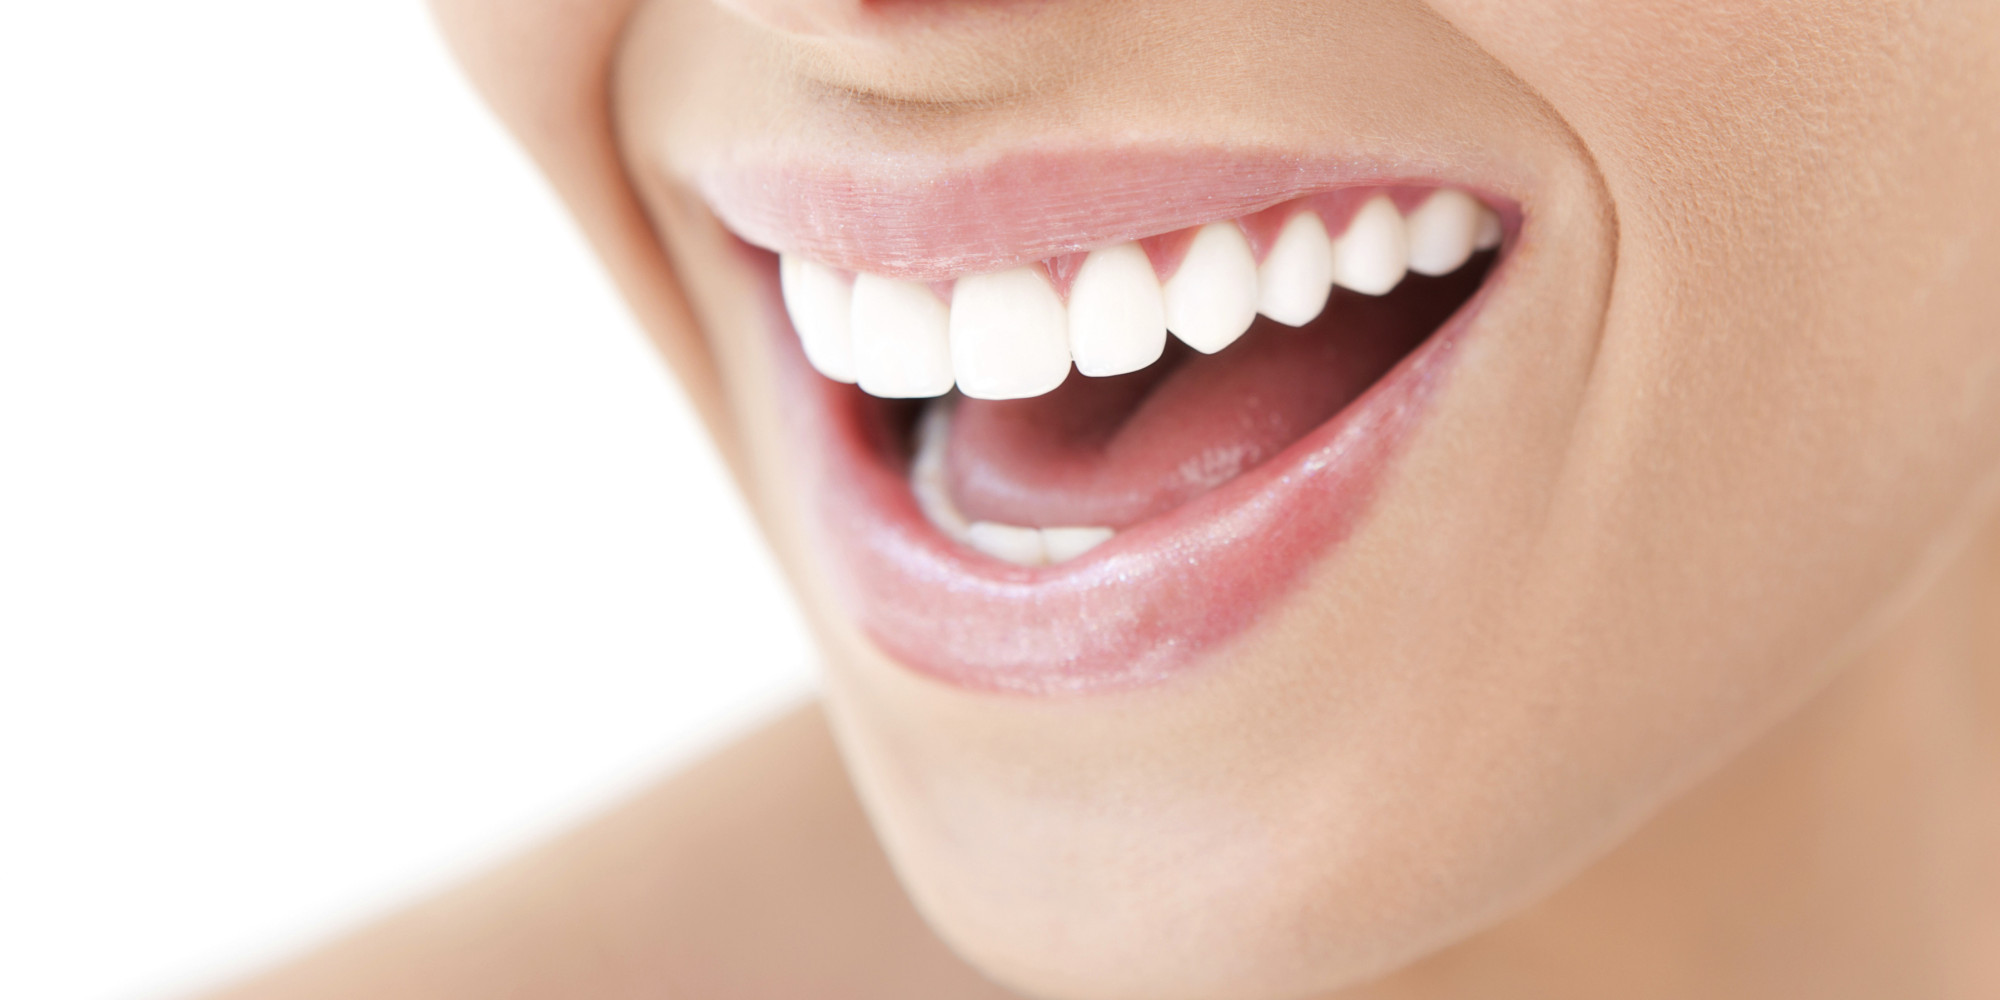 Top Teeth Tips